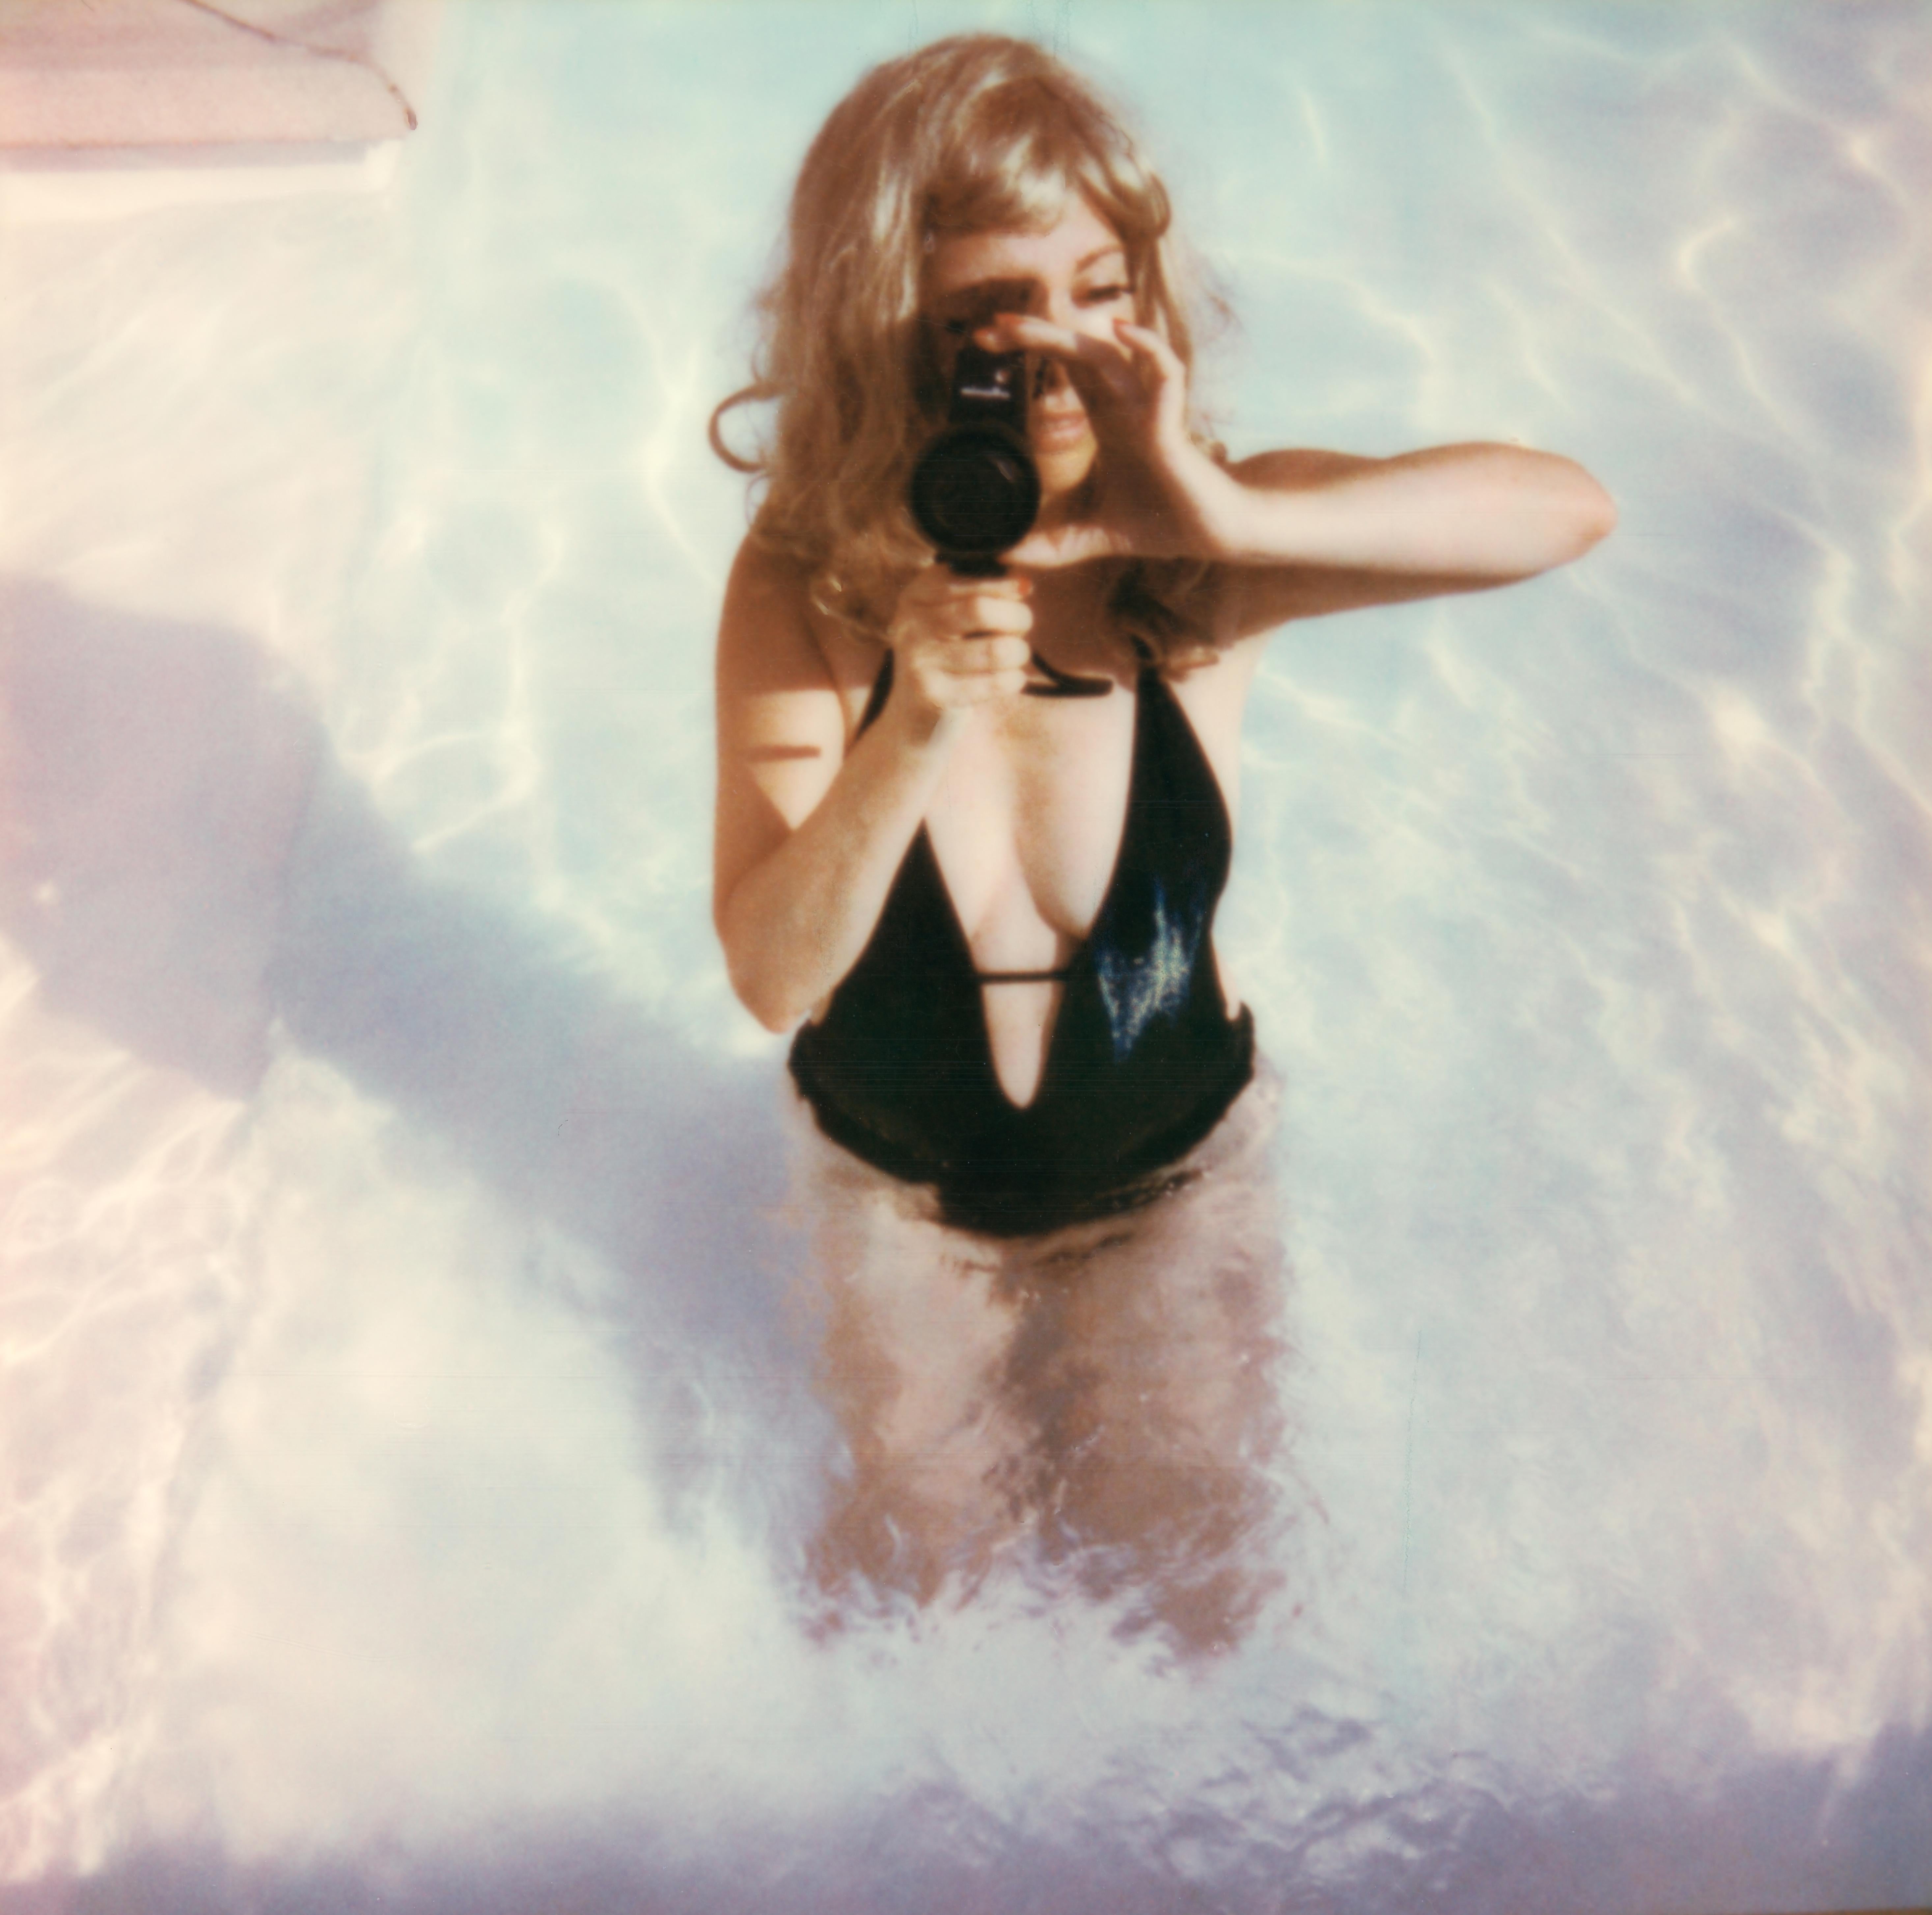 Clare Marie Bailey Portrait Photograph – The Pool II - Zeitgenössisch, Polaroid, Fotografie, figürlich, Porträt